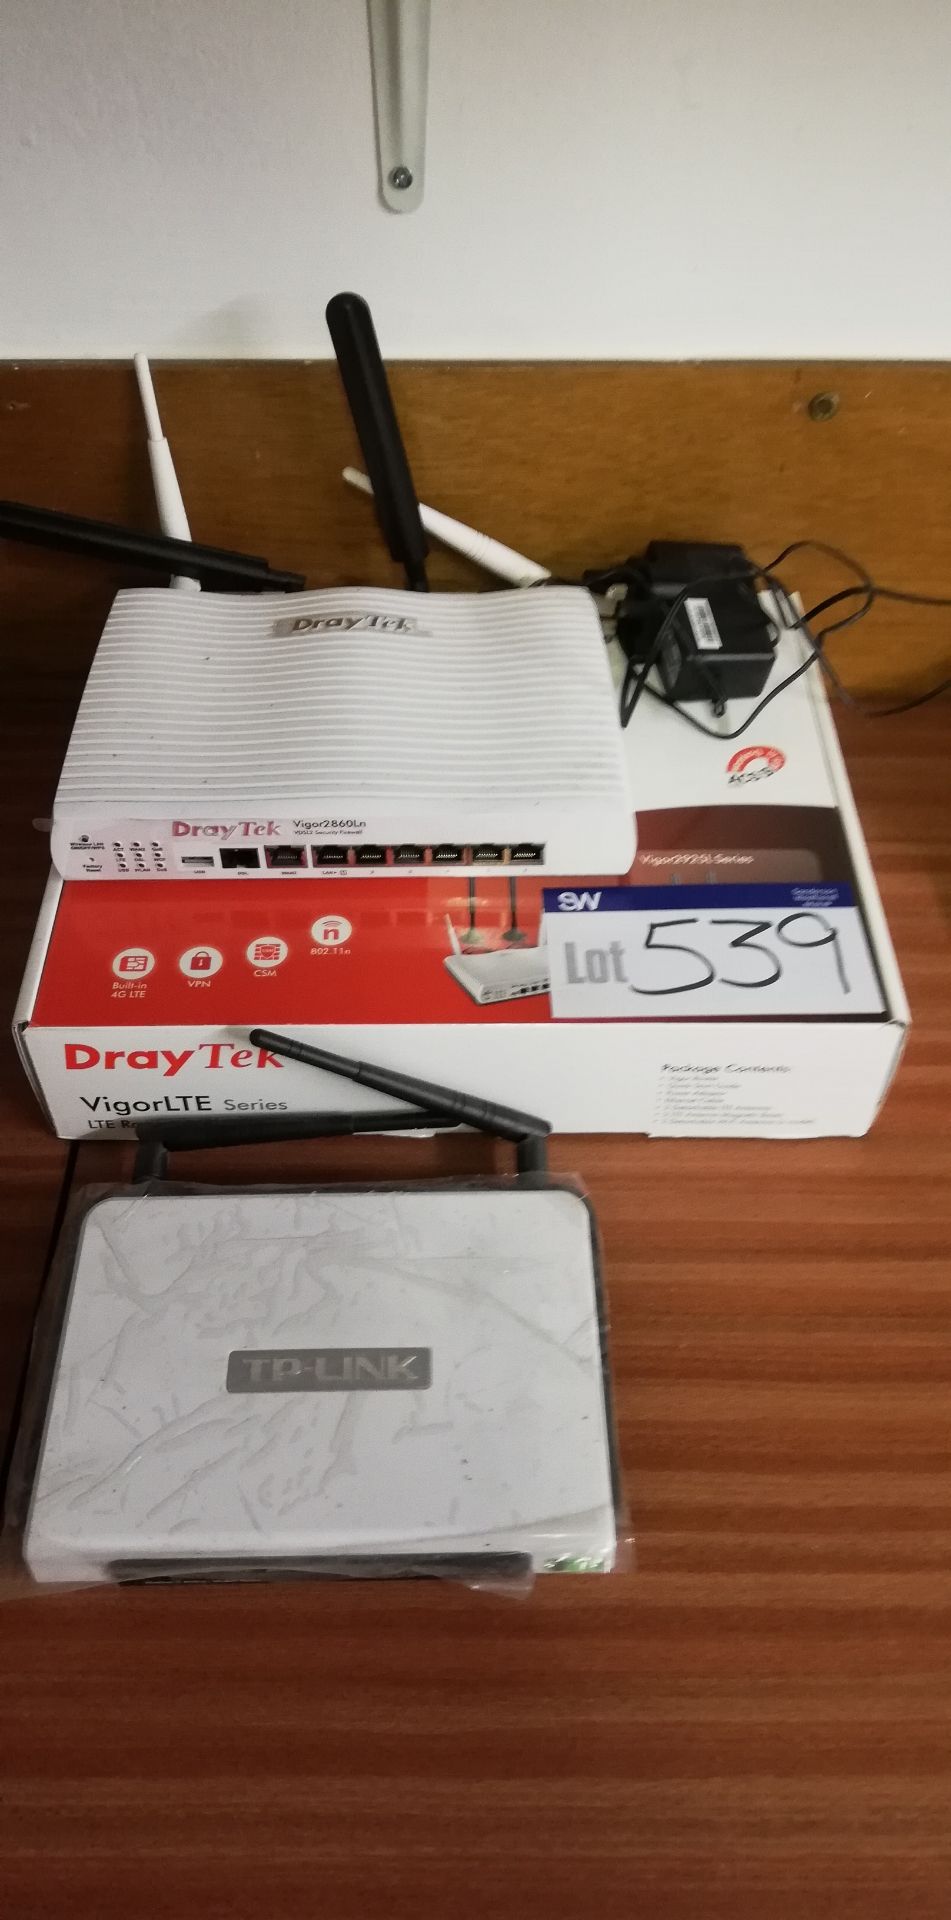 Draytek Vigor Router and TP Link Modem